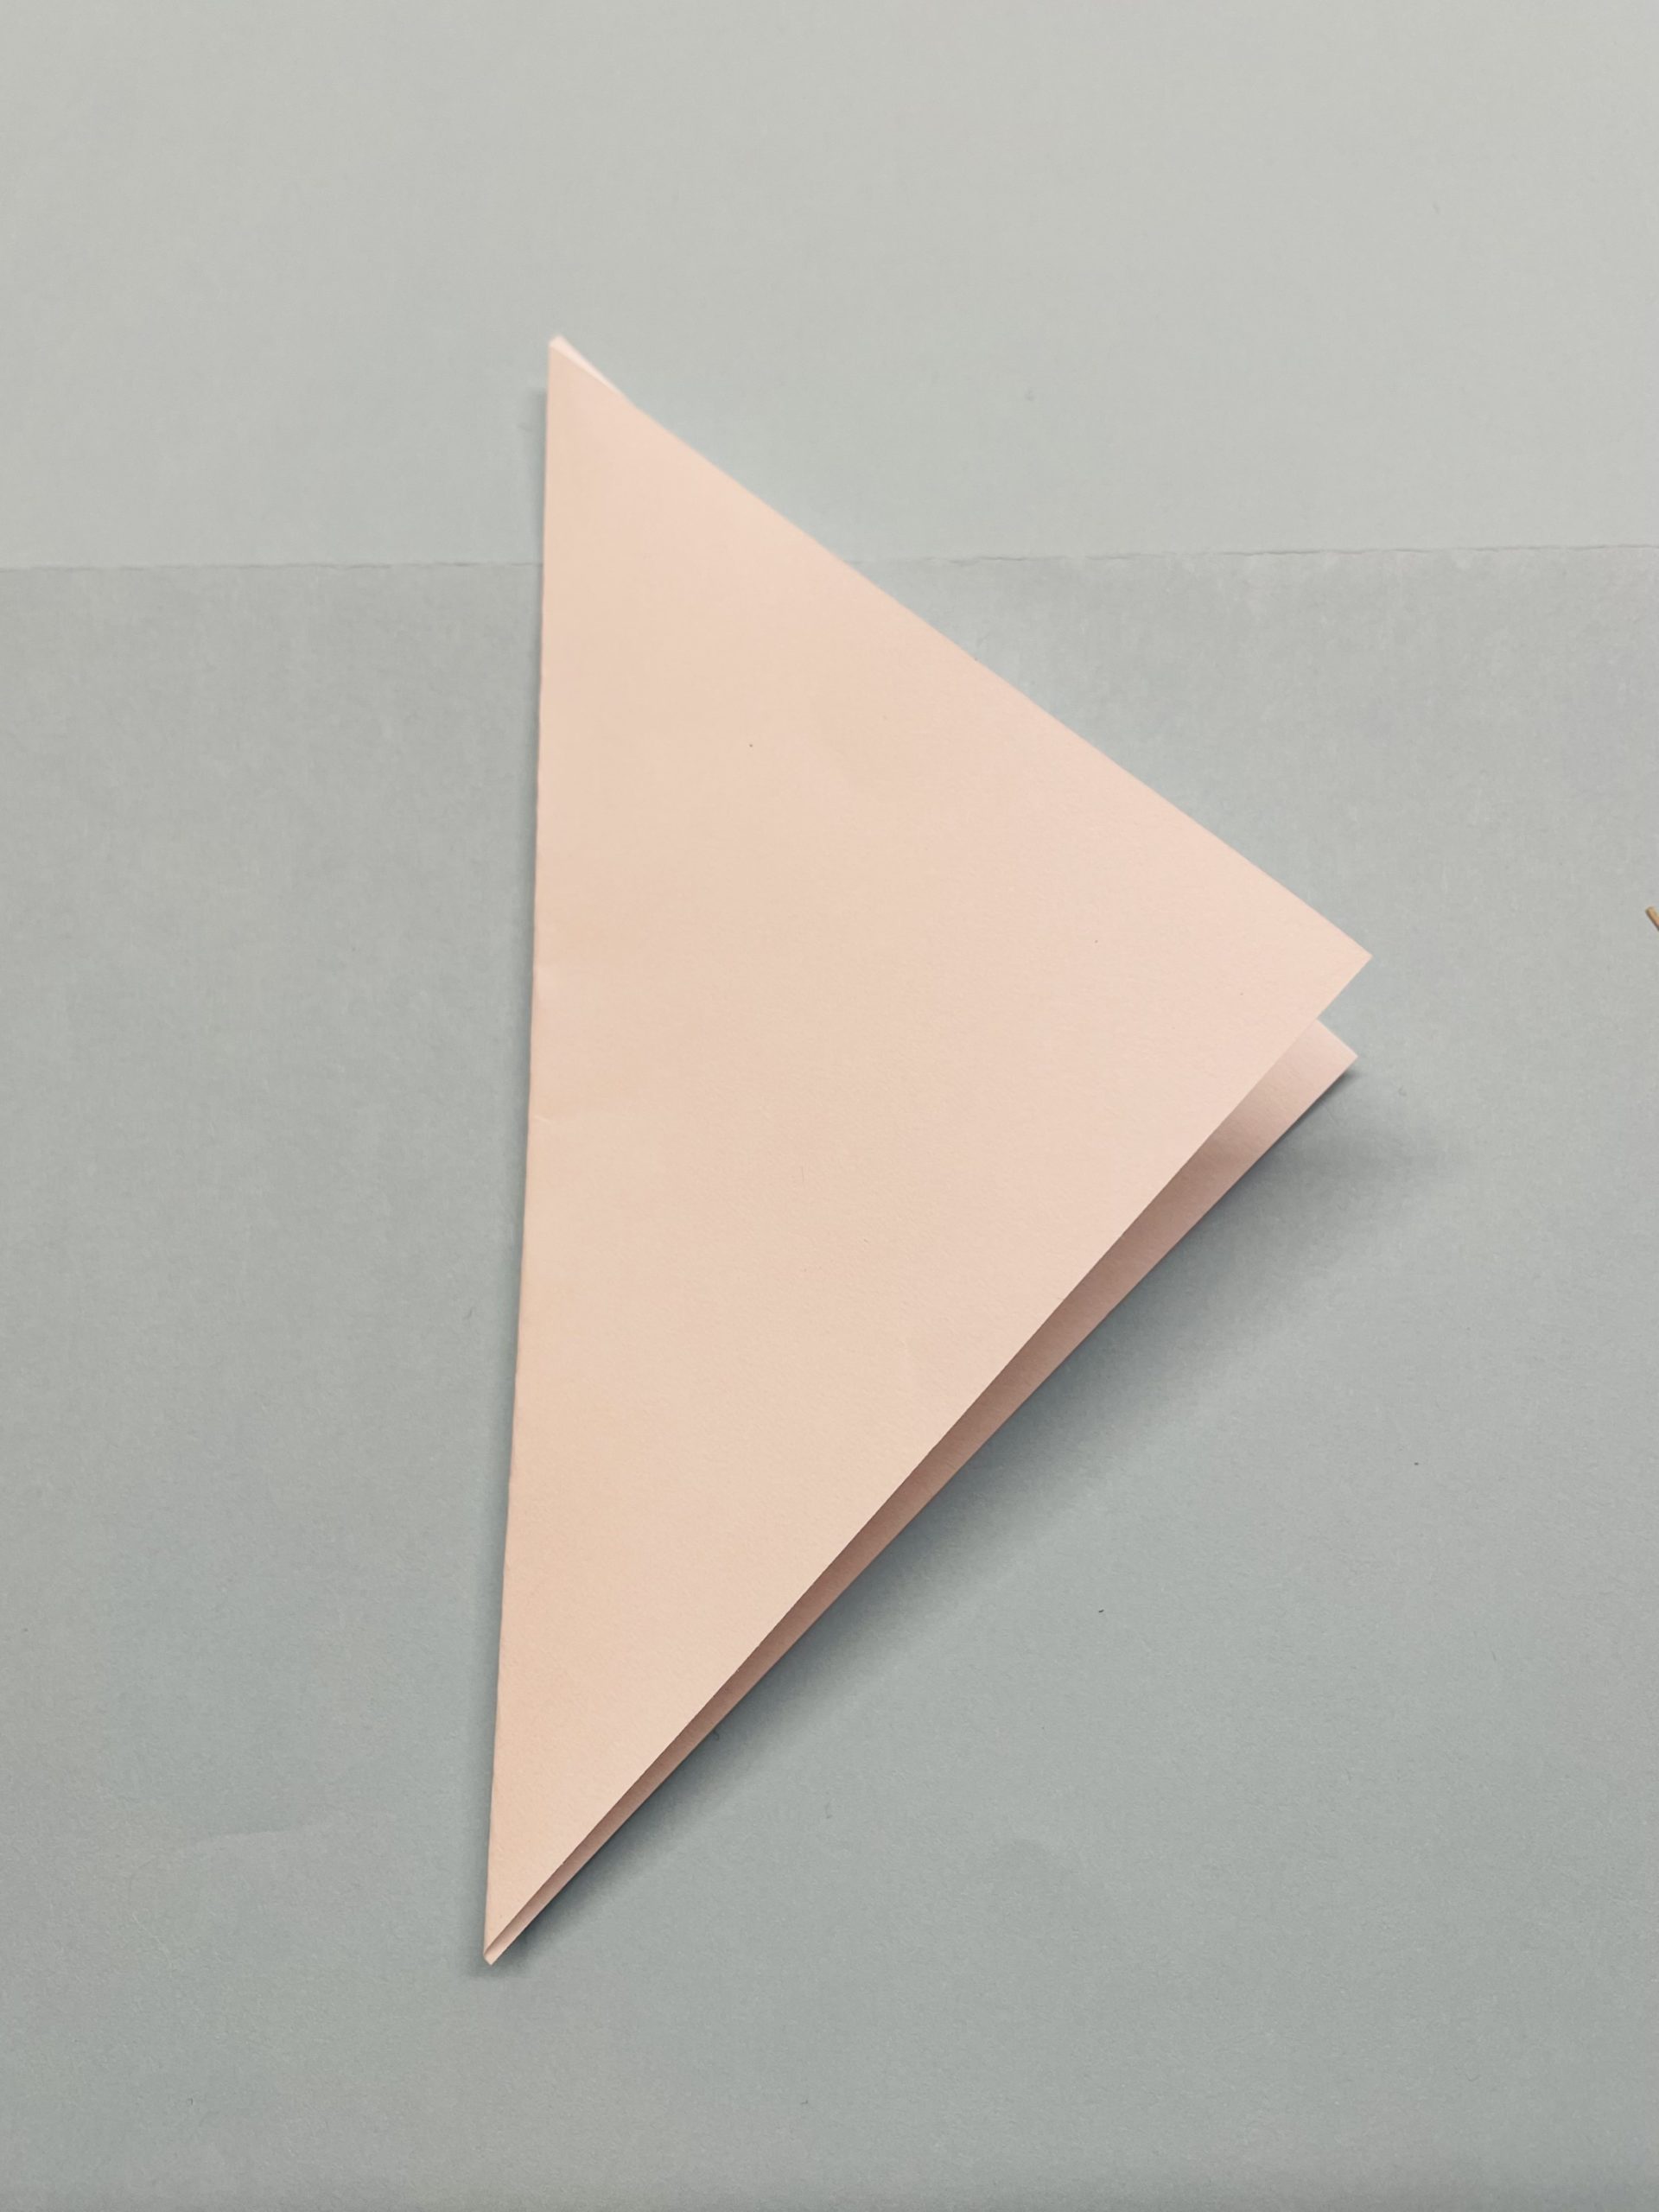 Bild zum Schritt 8 für das Bastel- und DIY-Abenteuer für Kinder: 'Dreht das Dreieck so, dass eine Spitze zu euch zeigt.'